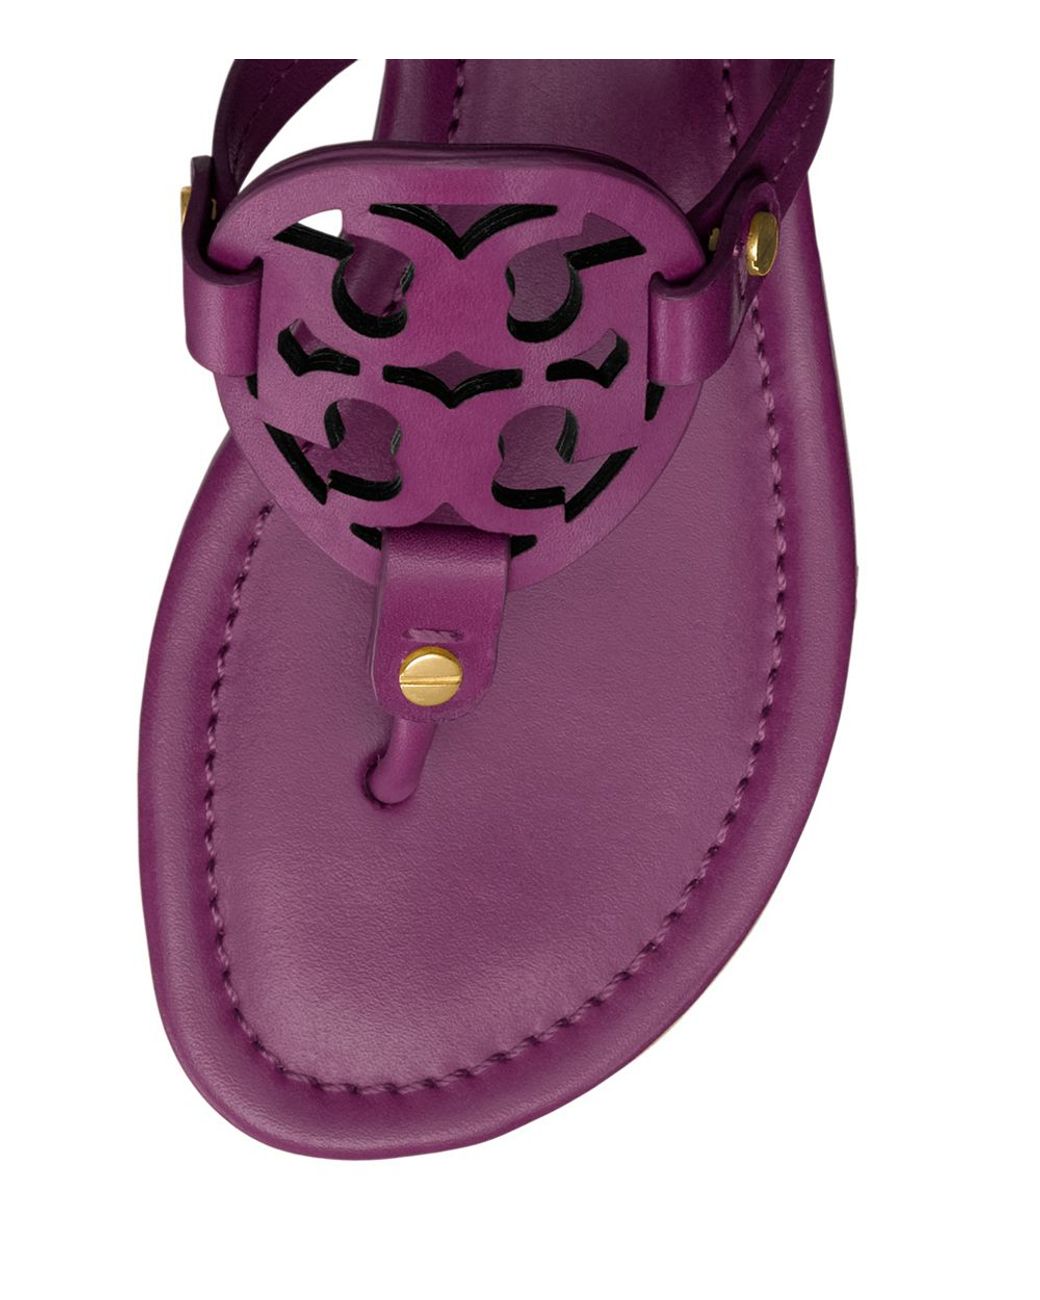 Tory Burch Miller Sandal in Purple | Lyst